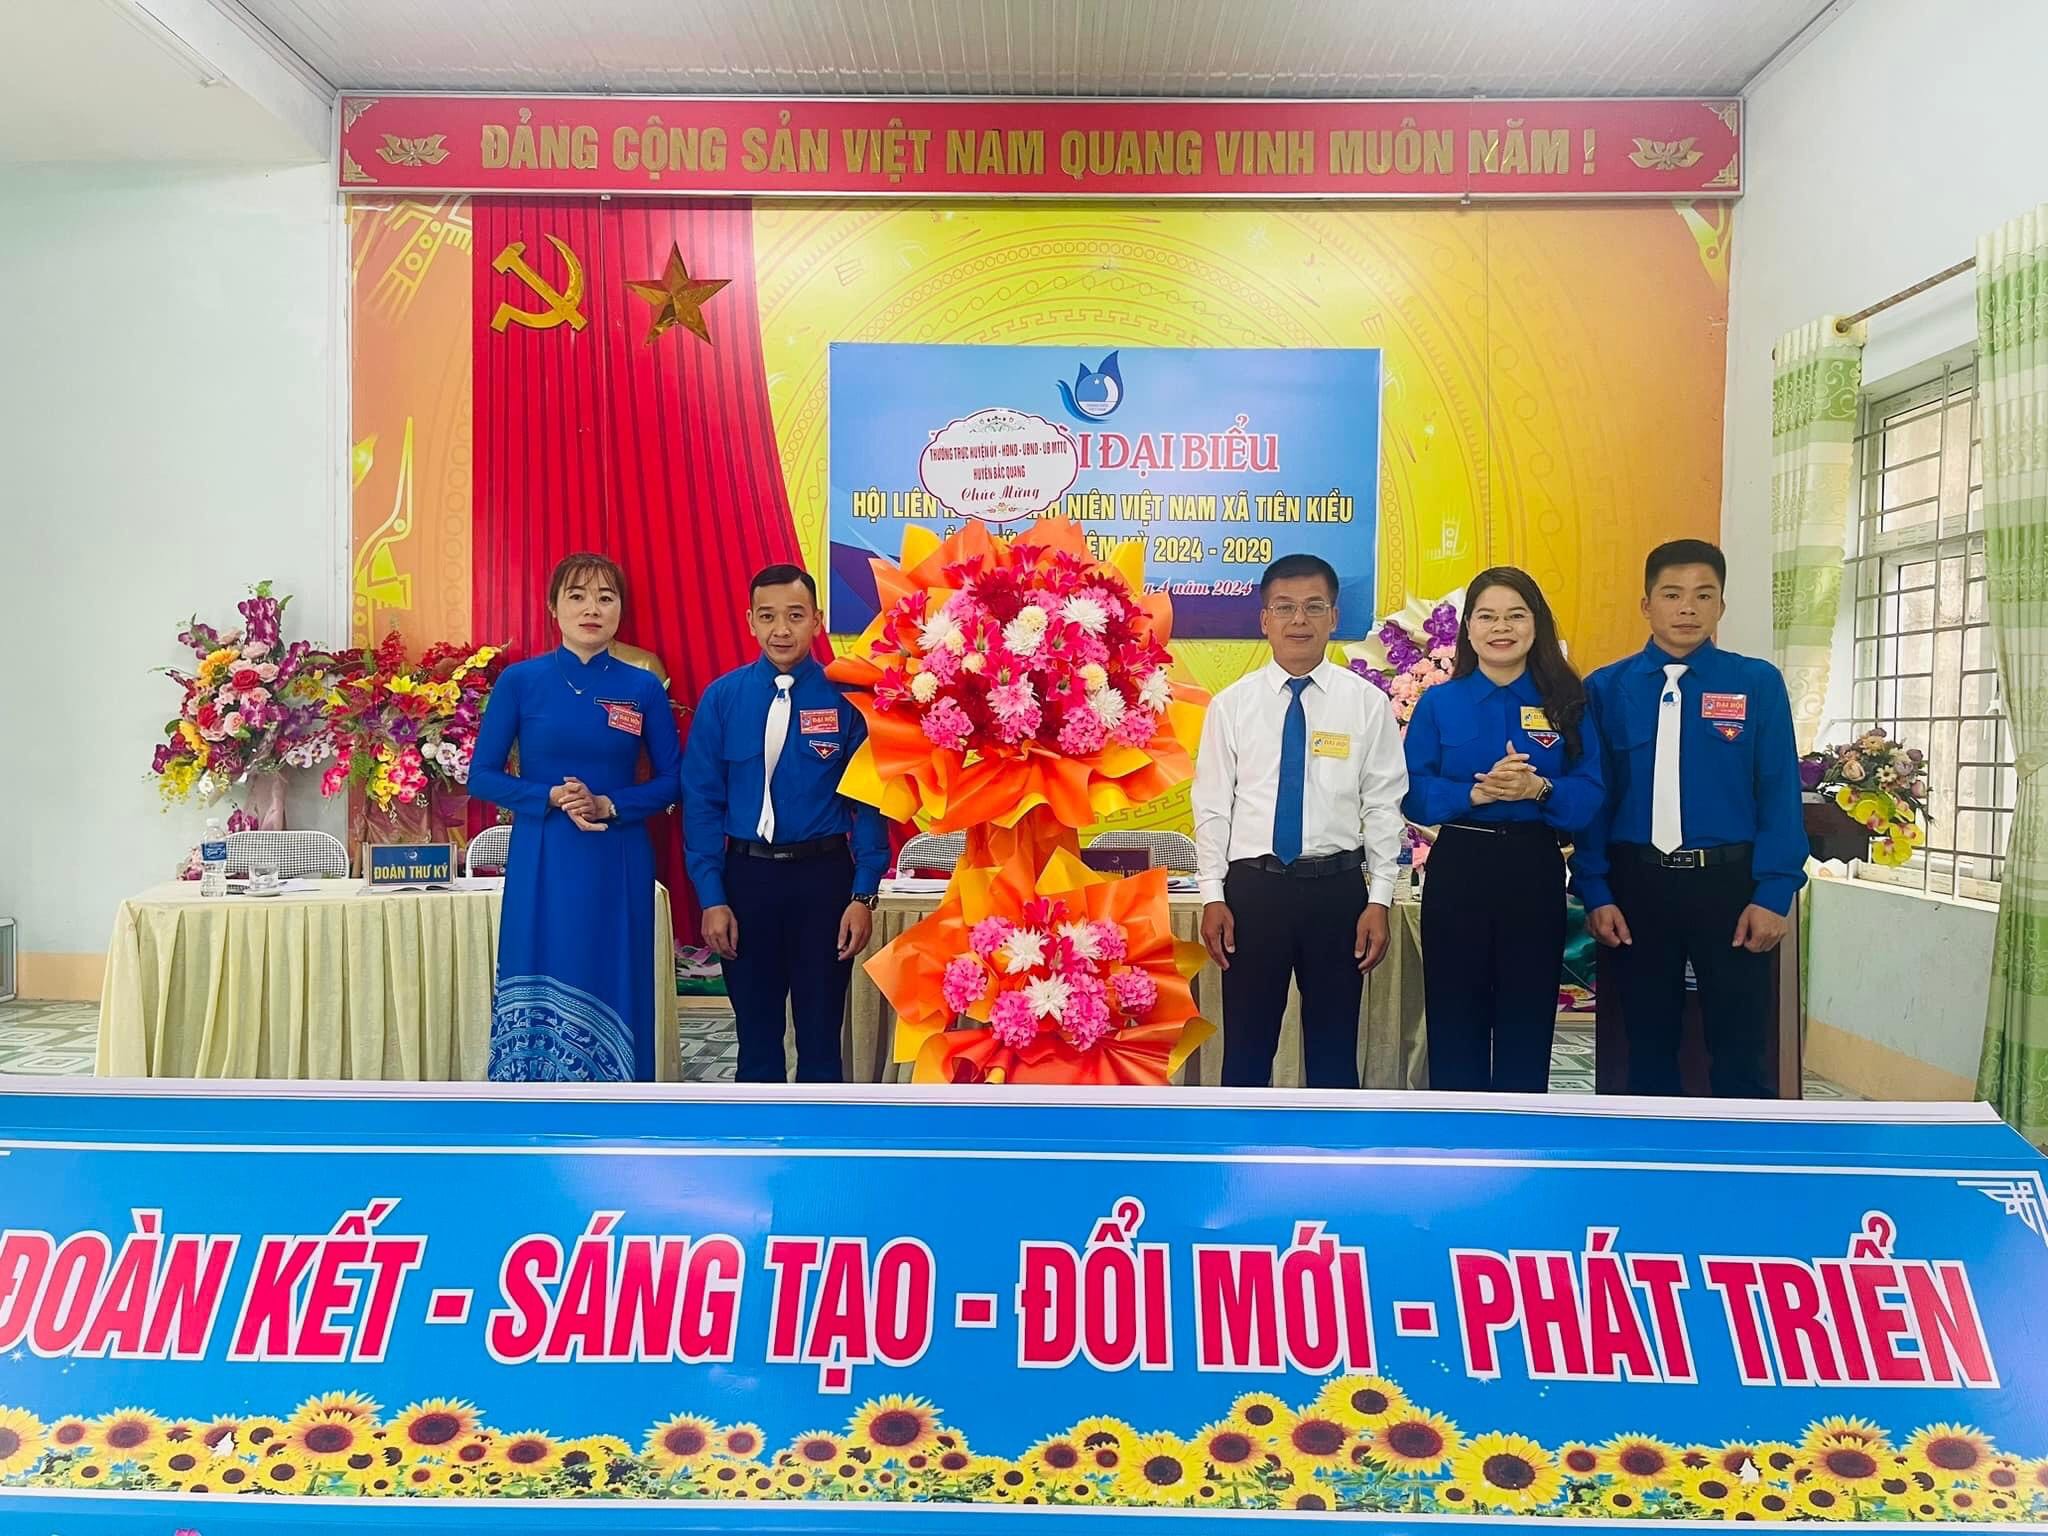 Uỷ ban Hội Liên hiệp Thanh niên Việt Nam xã Tiên Kiều tổ chức thành công Đại hội đại biểu Hội LHTN Việt Nam xã Tiên Kiều lần thứ 6, nhiệm kỳ 2024-2029.